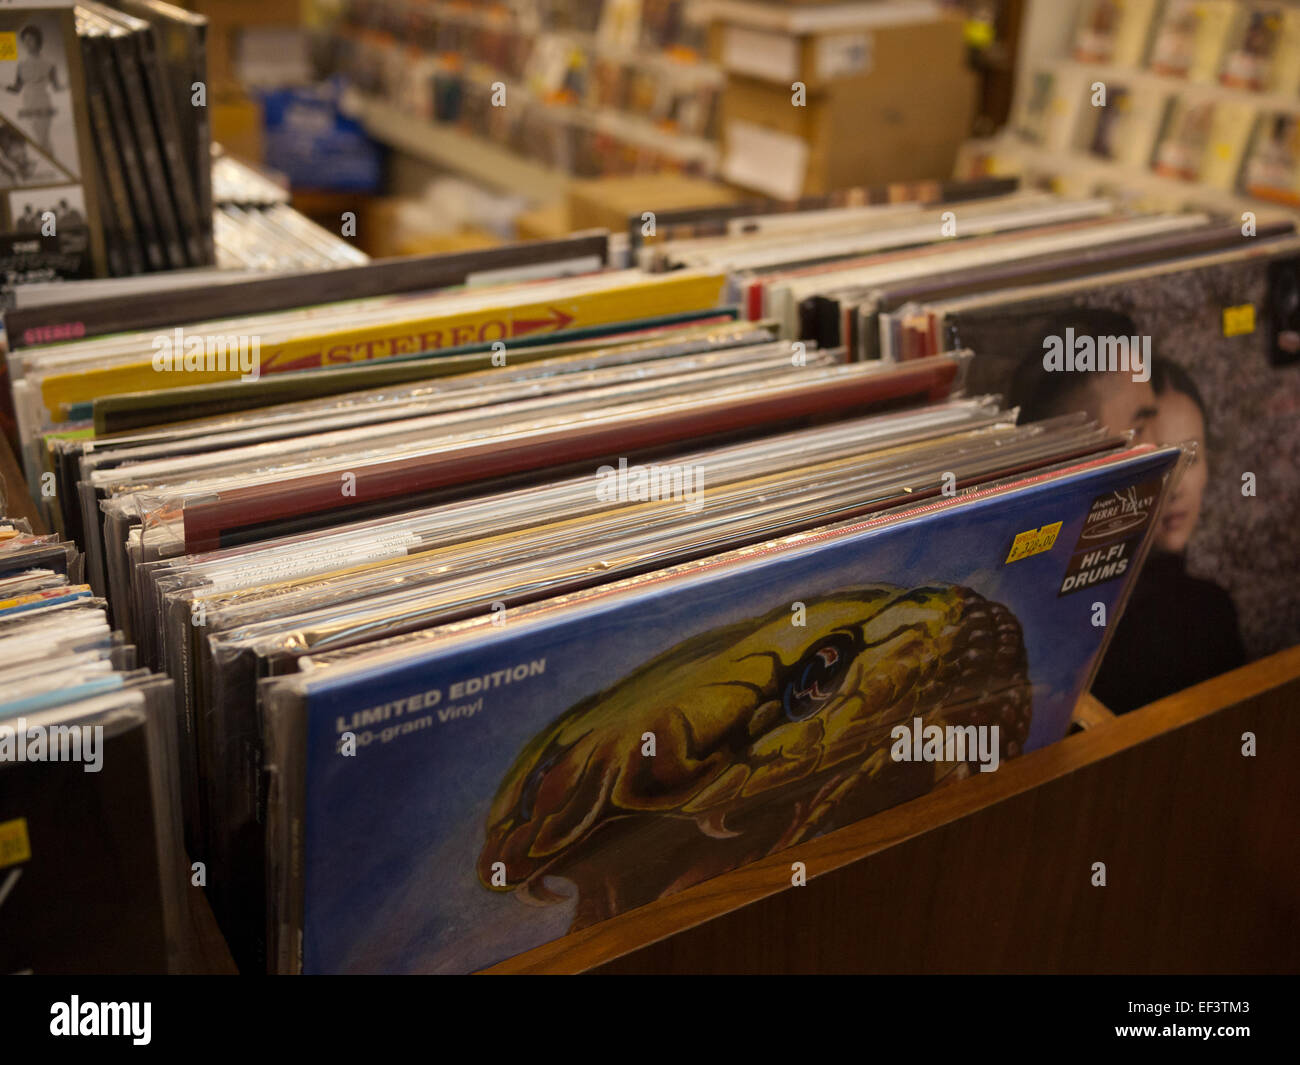 Musica dischi in vinile in negozio Foto Stock